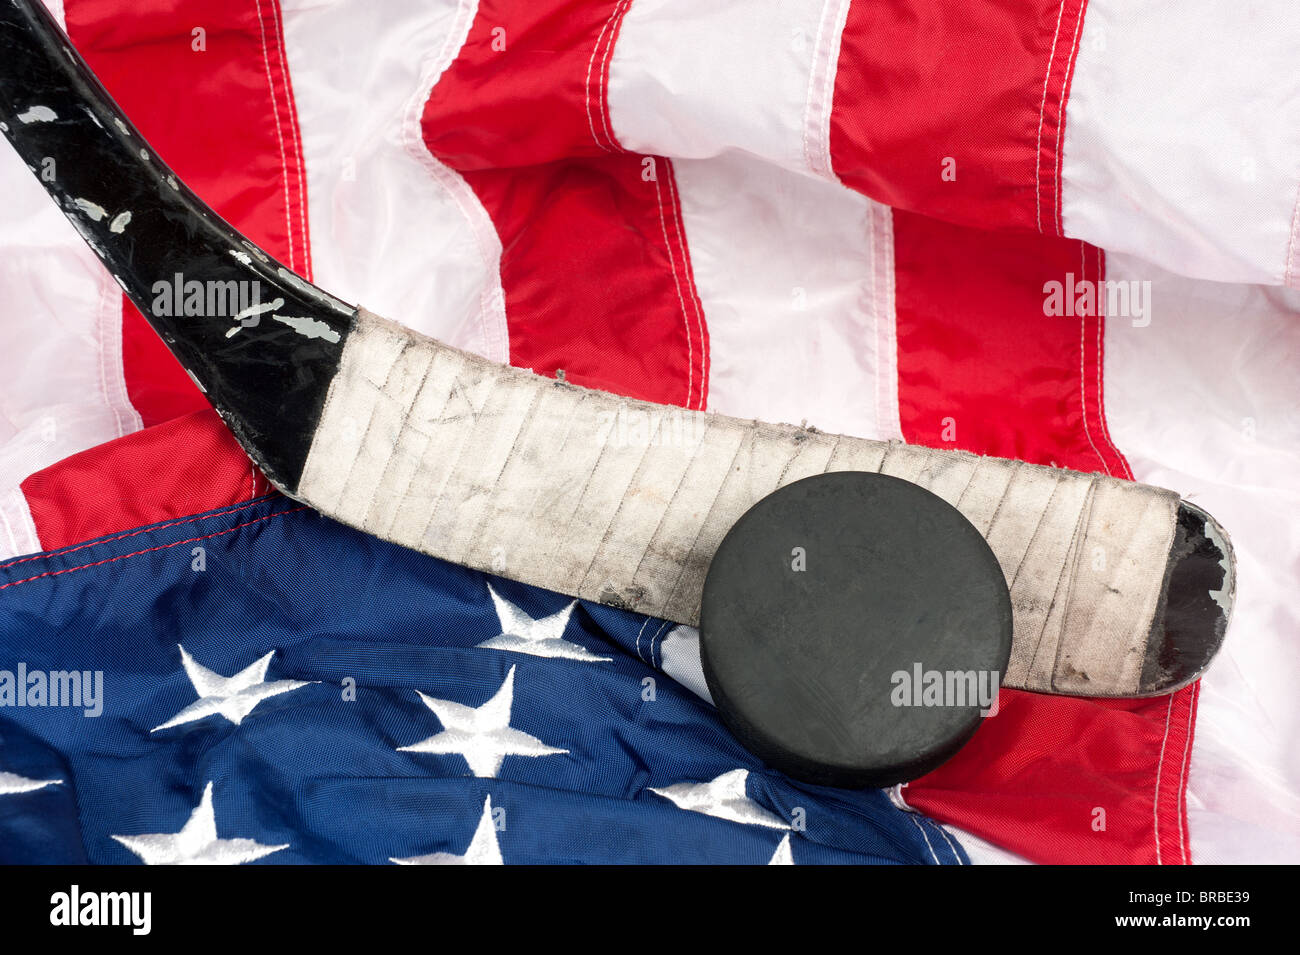 Los equipos de hockey incluyendo un stick y el puck en una bandera americana para inferir un estadounidense patriota deporte. Foto de stock